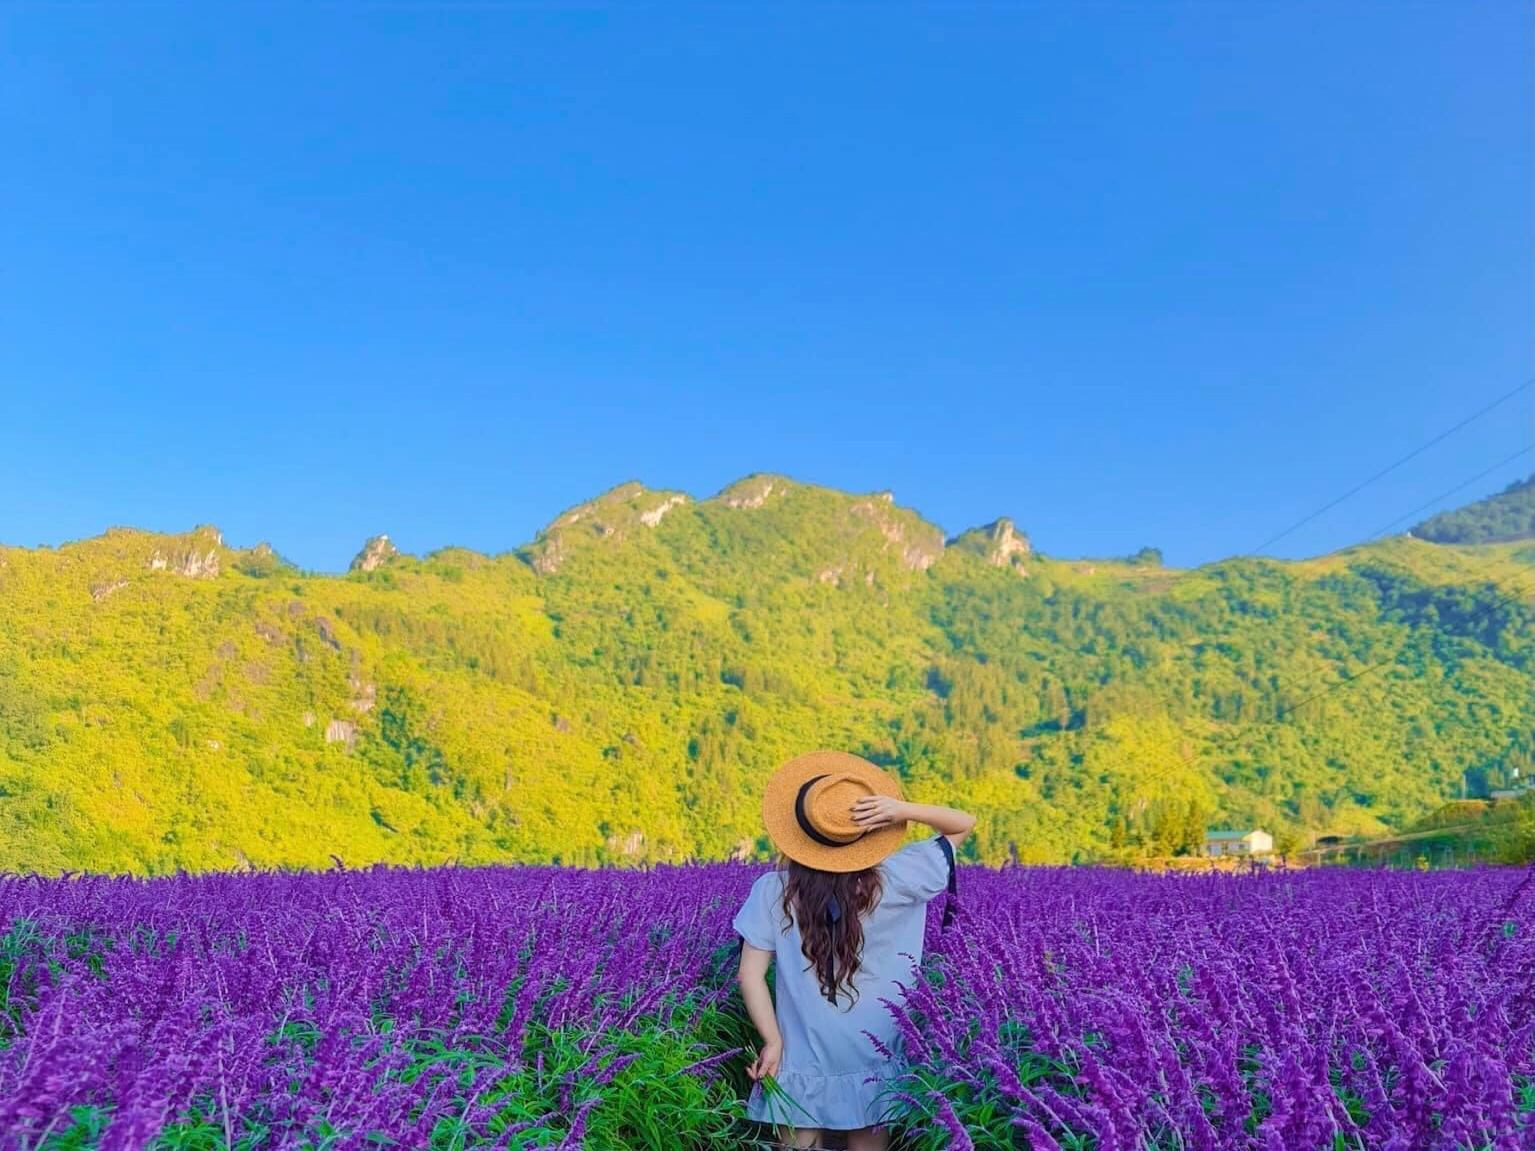 Vườn hoa Lavender: Khám phá vườn hoa Lavender tuyệt đẹp và tham quan cảnh quan đầy phong cách của những chùm hoa này. Nơi đây là nơi hoàn hảo để nghỉ ngơi và thư giãn, hít thở không khí trong lành và tận hưởng vẻ đẹp thiên nhiên.